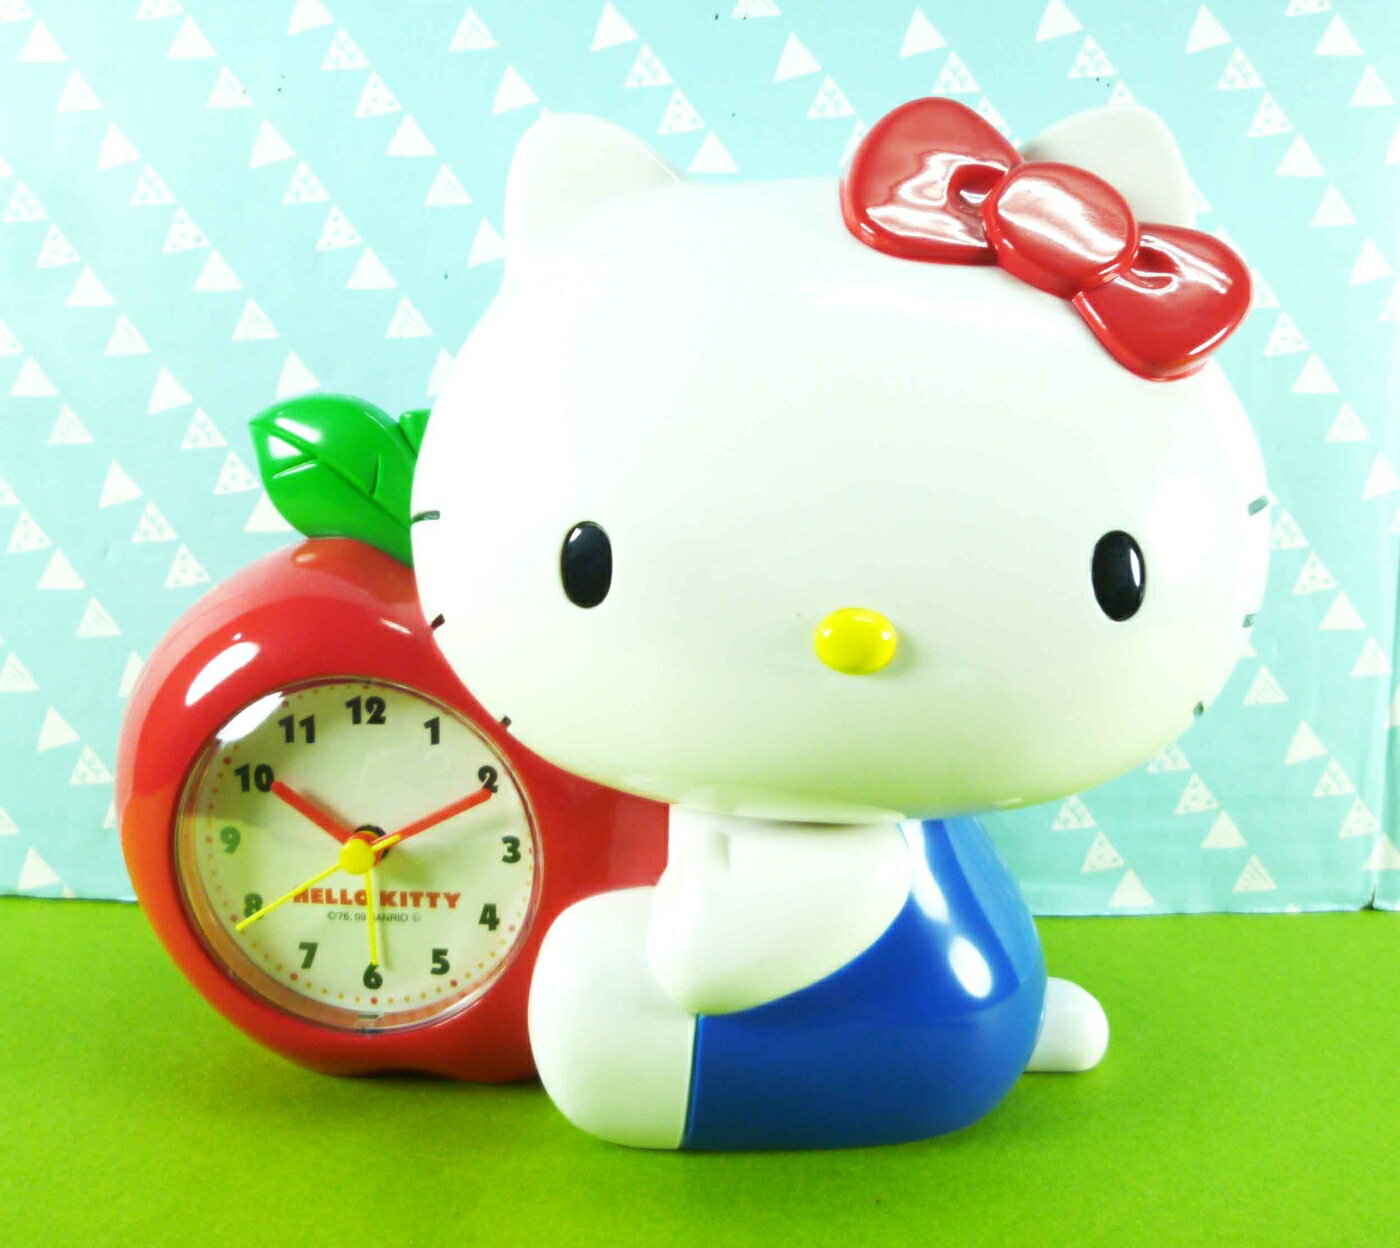 【震撼精品百貨】Hello Kitty 凱蒂貓 造型鬧鐘+存錢筒#72579 震撼日式精品百貨